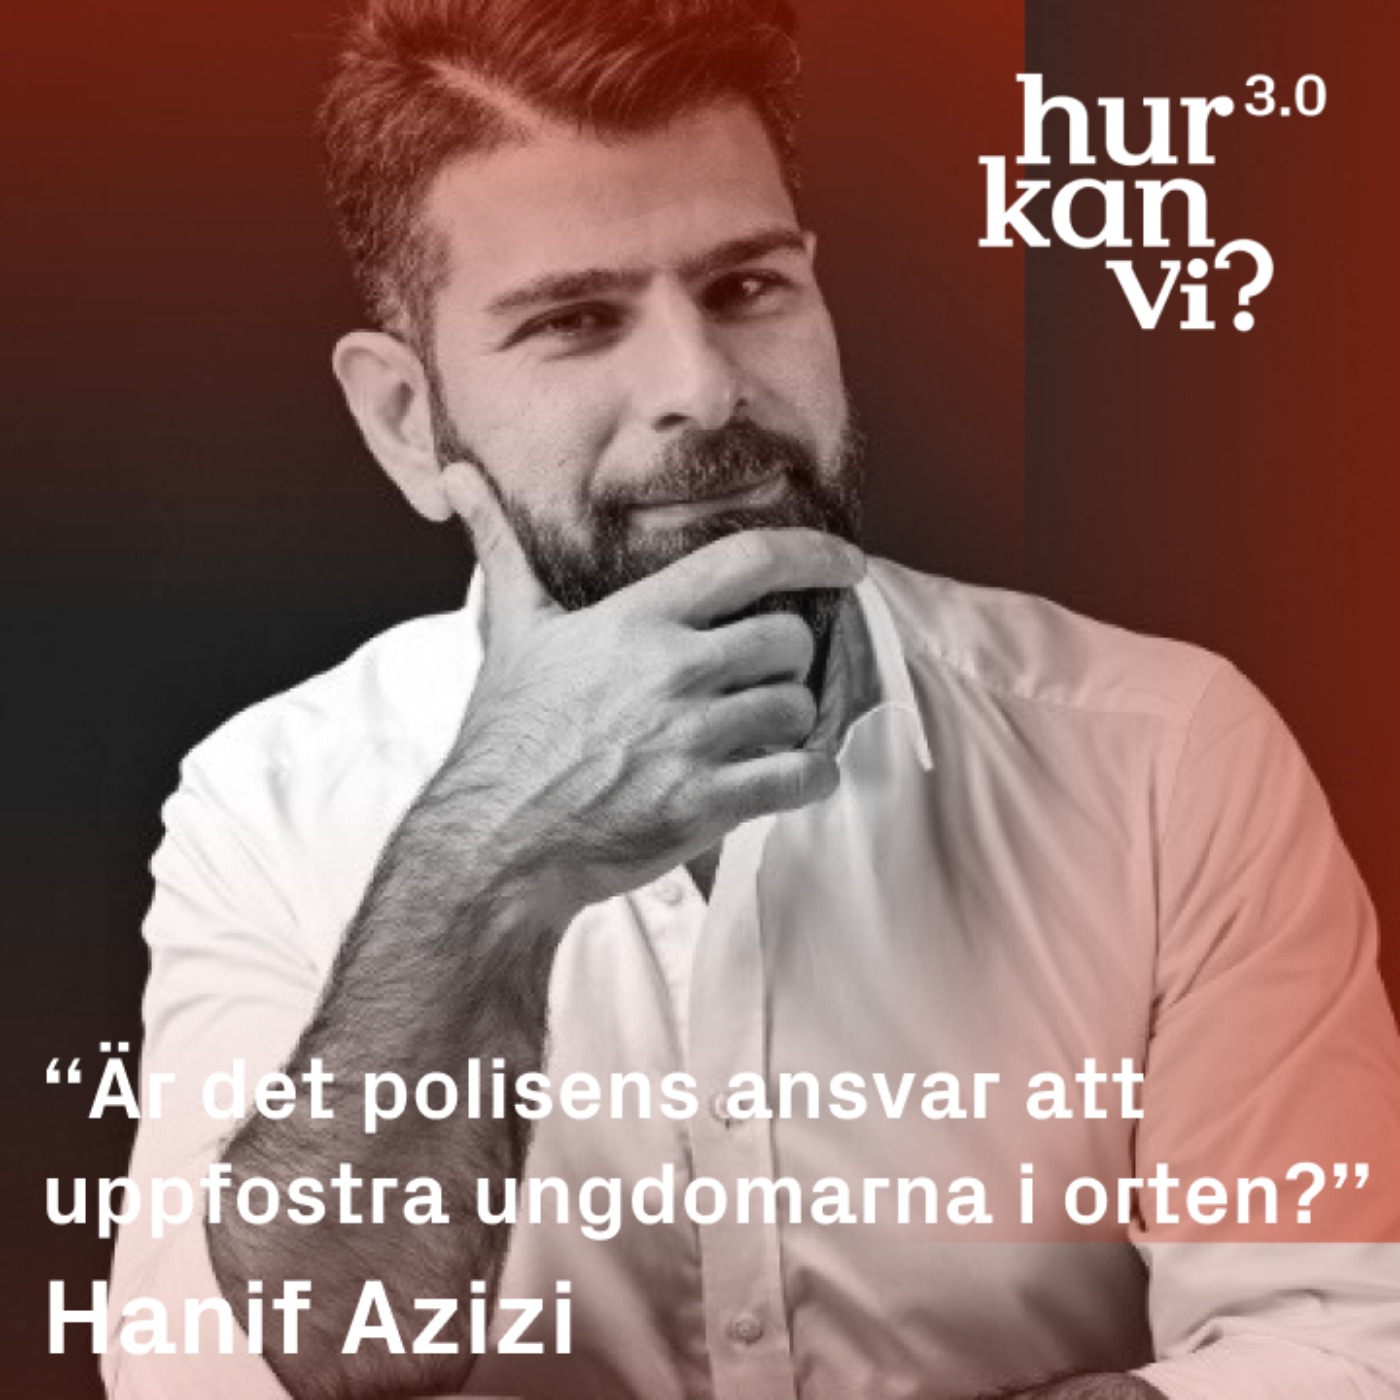 Hanif Azizi - “Är det polisens ansvar att uppfostra ungdomarna i orten?”